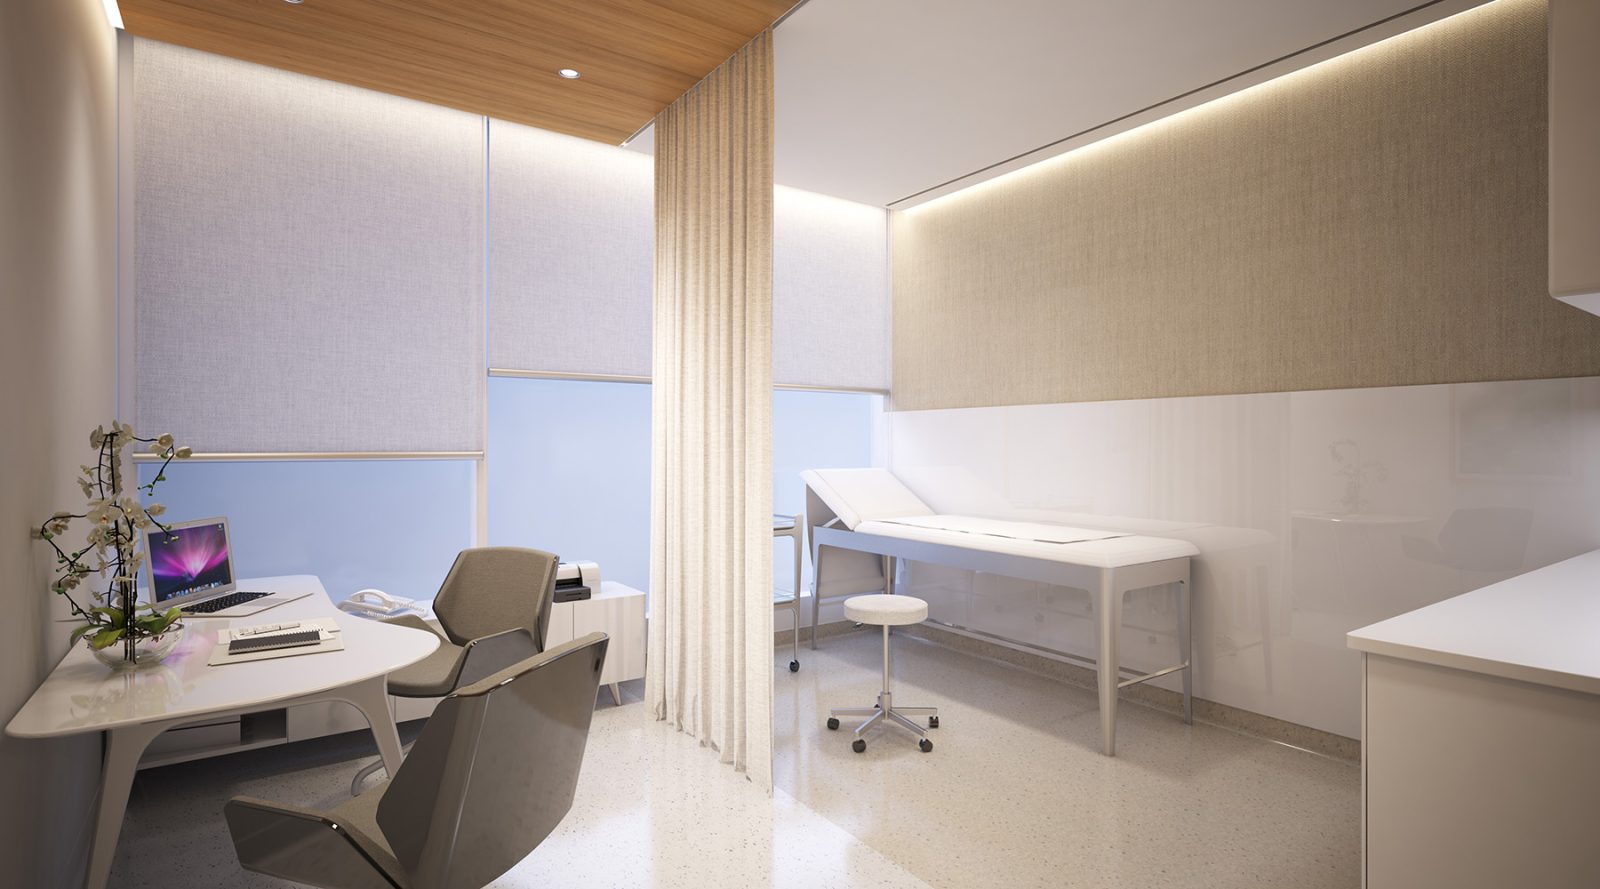 جداسازی فضا در طراحی دکوراسیون داخلی مطب پزشک